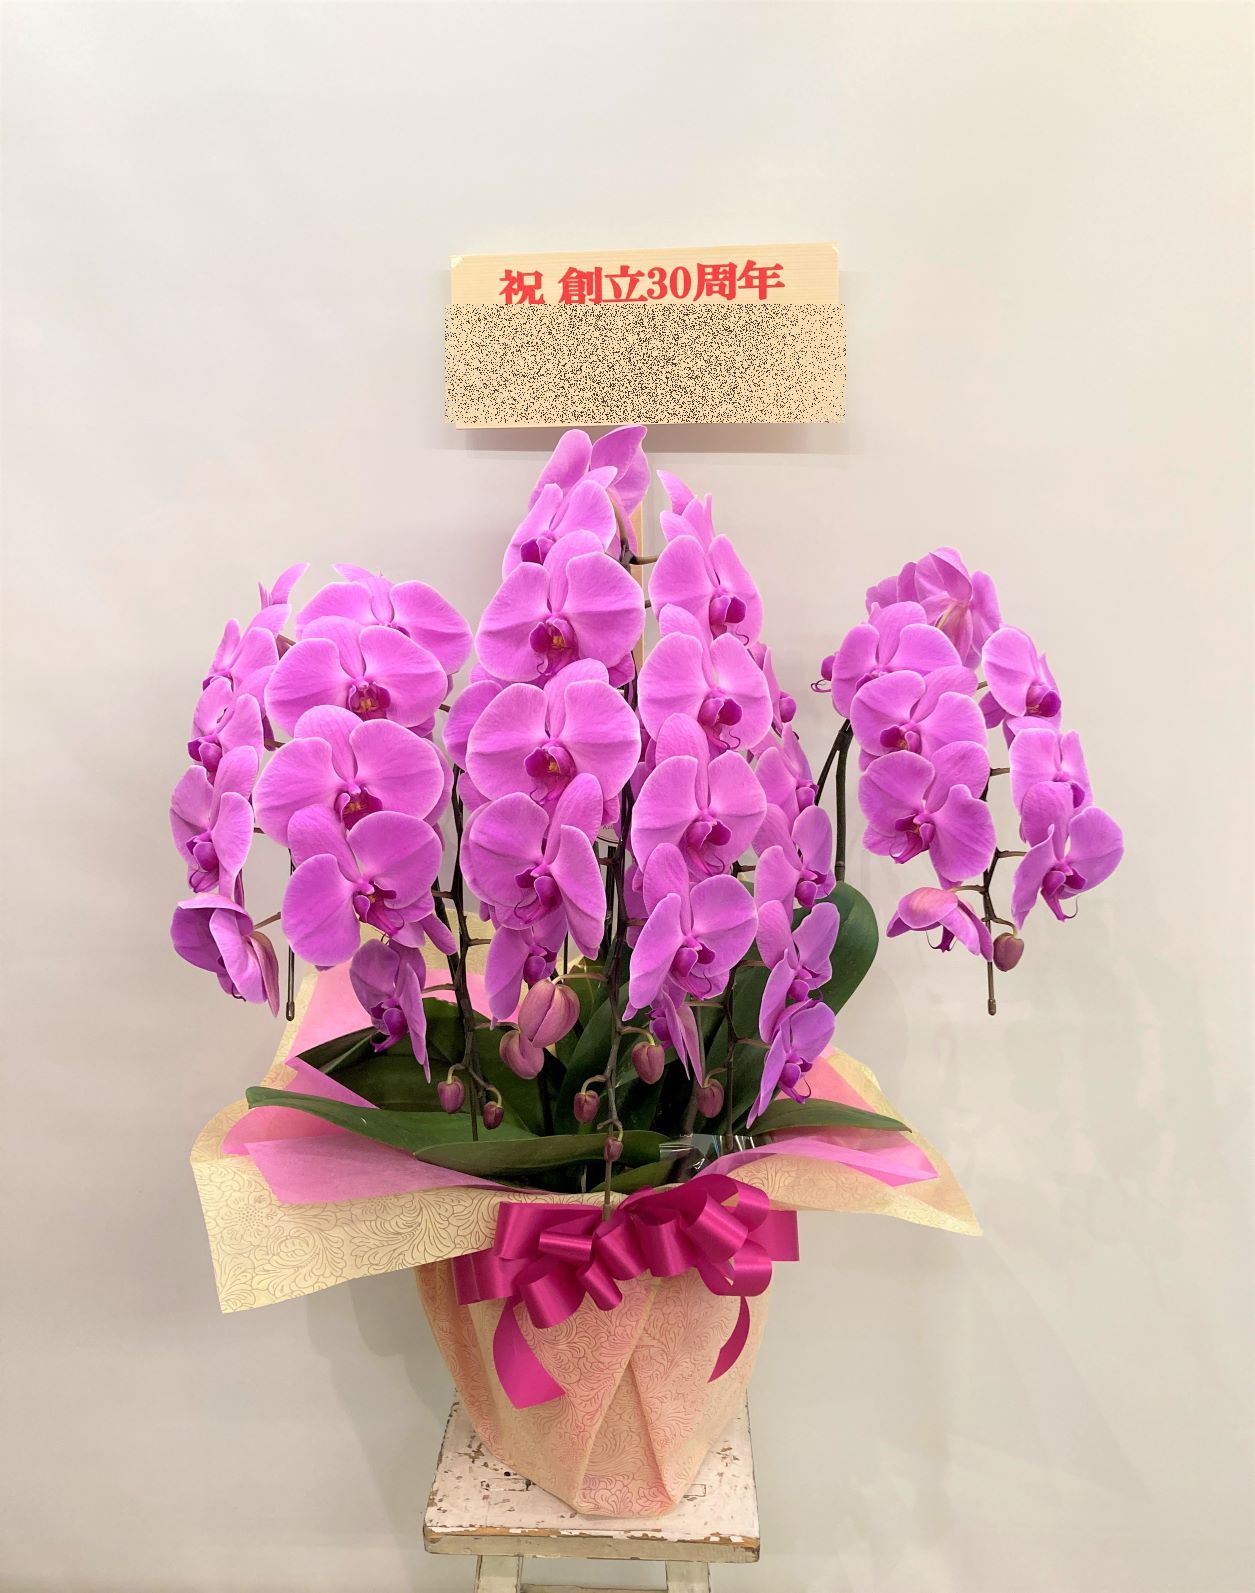 みなとみらいギャラリーへ胡蝶蘭を配達しました。【横浜花屋の花束・スタンド花・胡蝶蘭・バルーン・アレンジメント配達事例899】